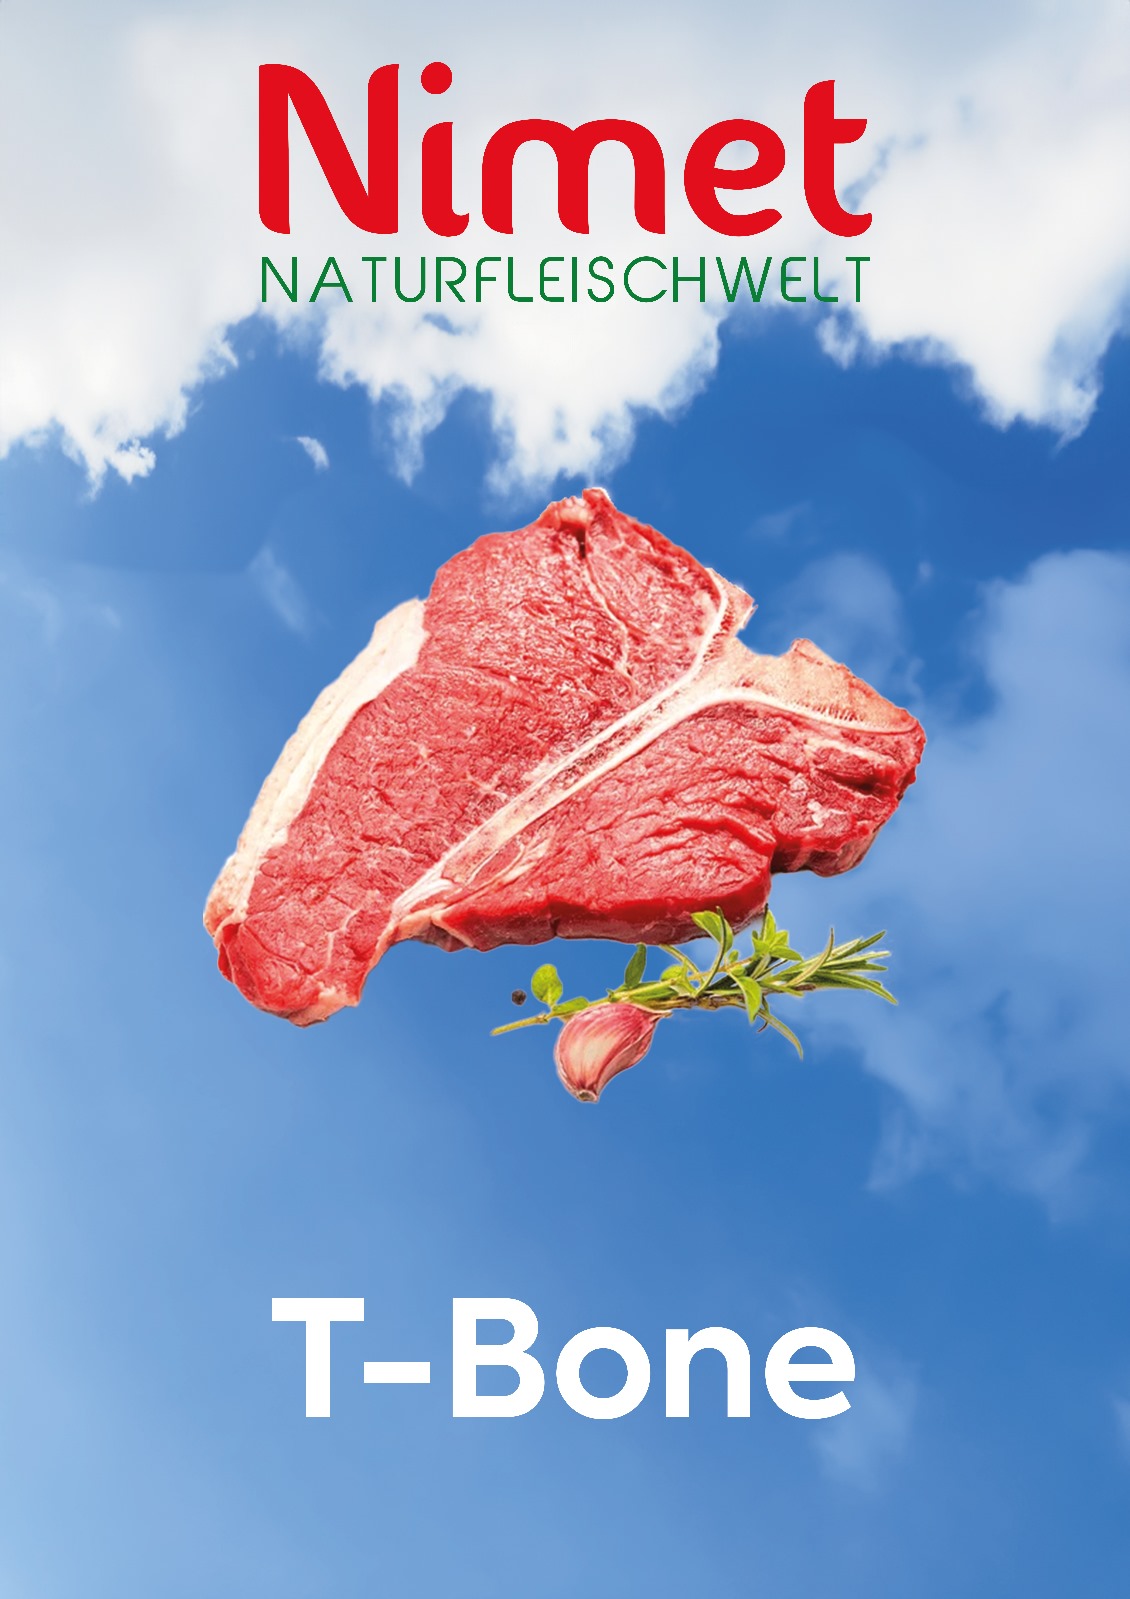 KAMPANYA ÜRÜNÜ T-Bone Steak  (Paketleme + - 600 gr) Kg fiyatı